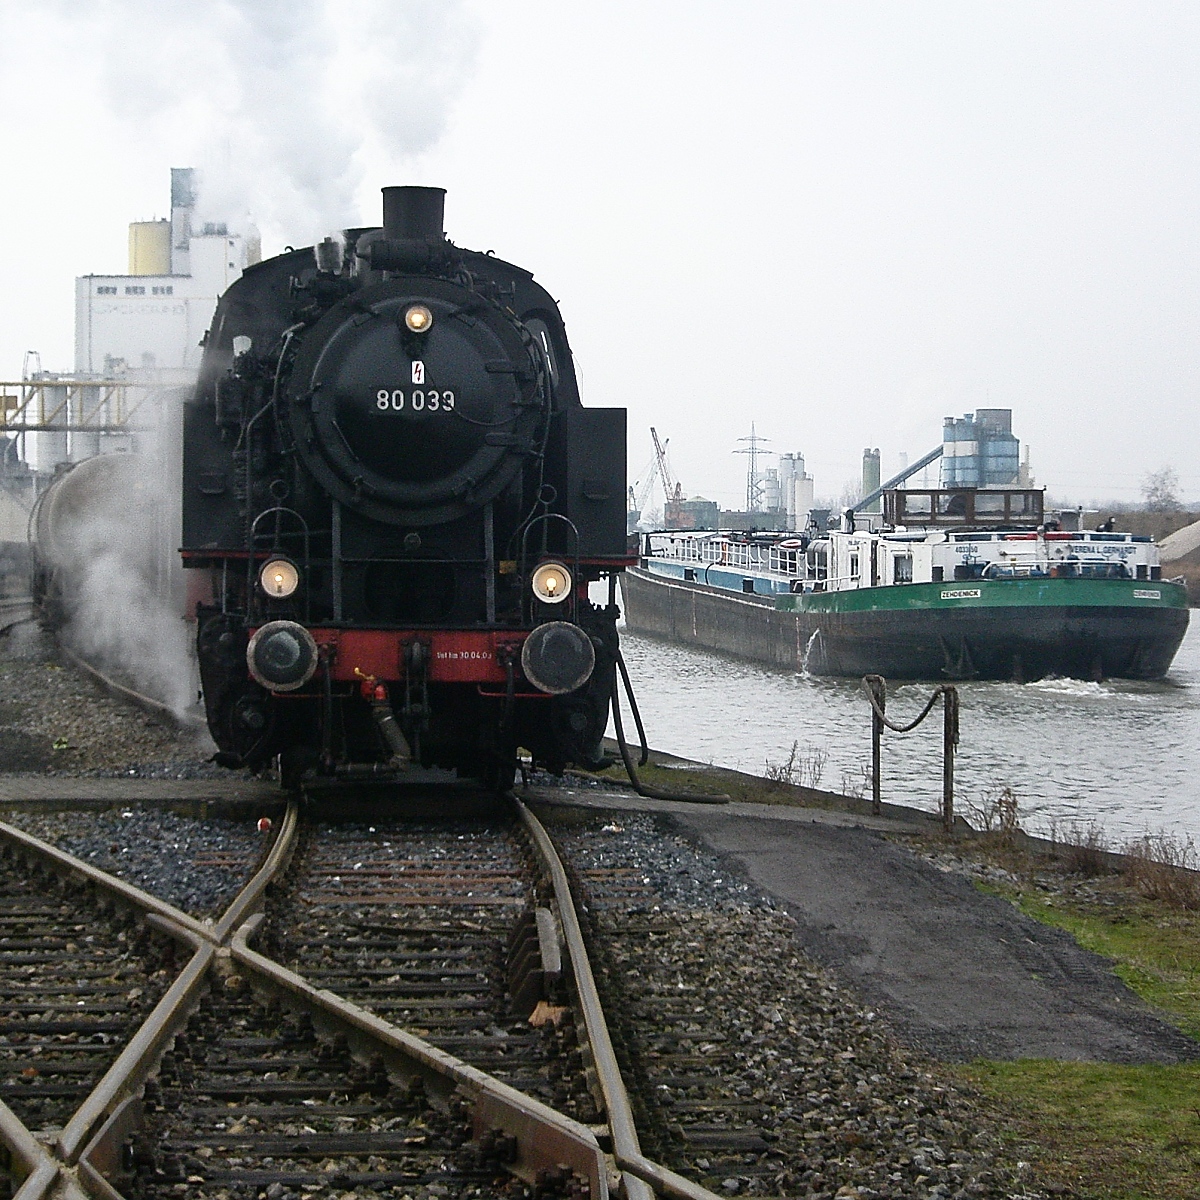 Hafenatmosphäre in Hamm am 14.02.2009: Während 80 039 Wasser fasst, ist auf dem Kanal ein Tankschiff unterwegs